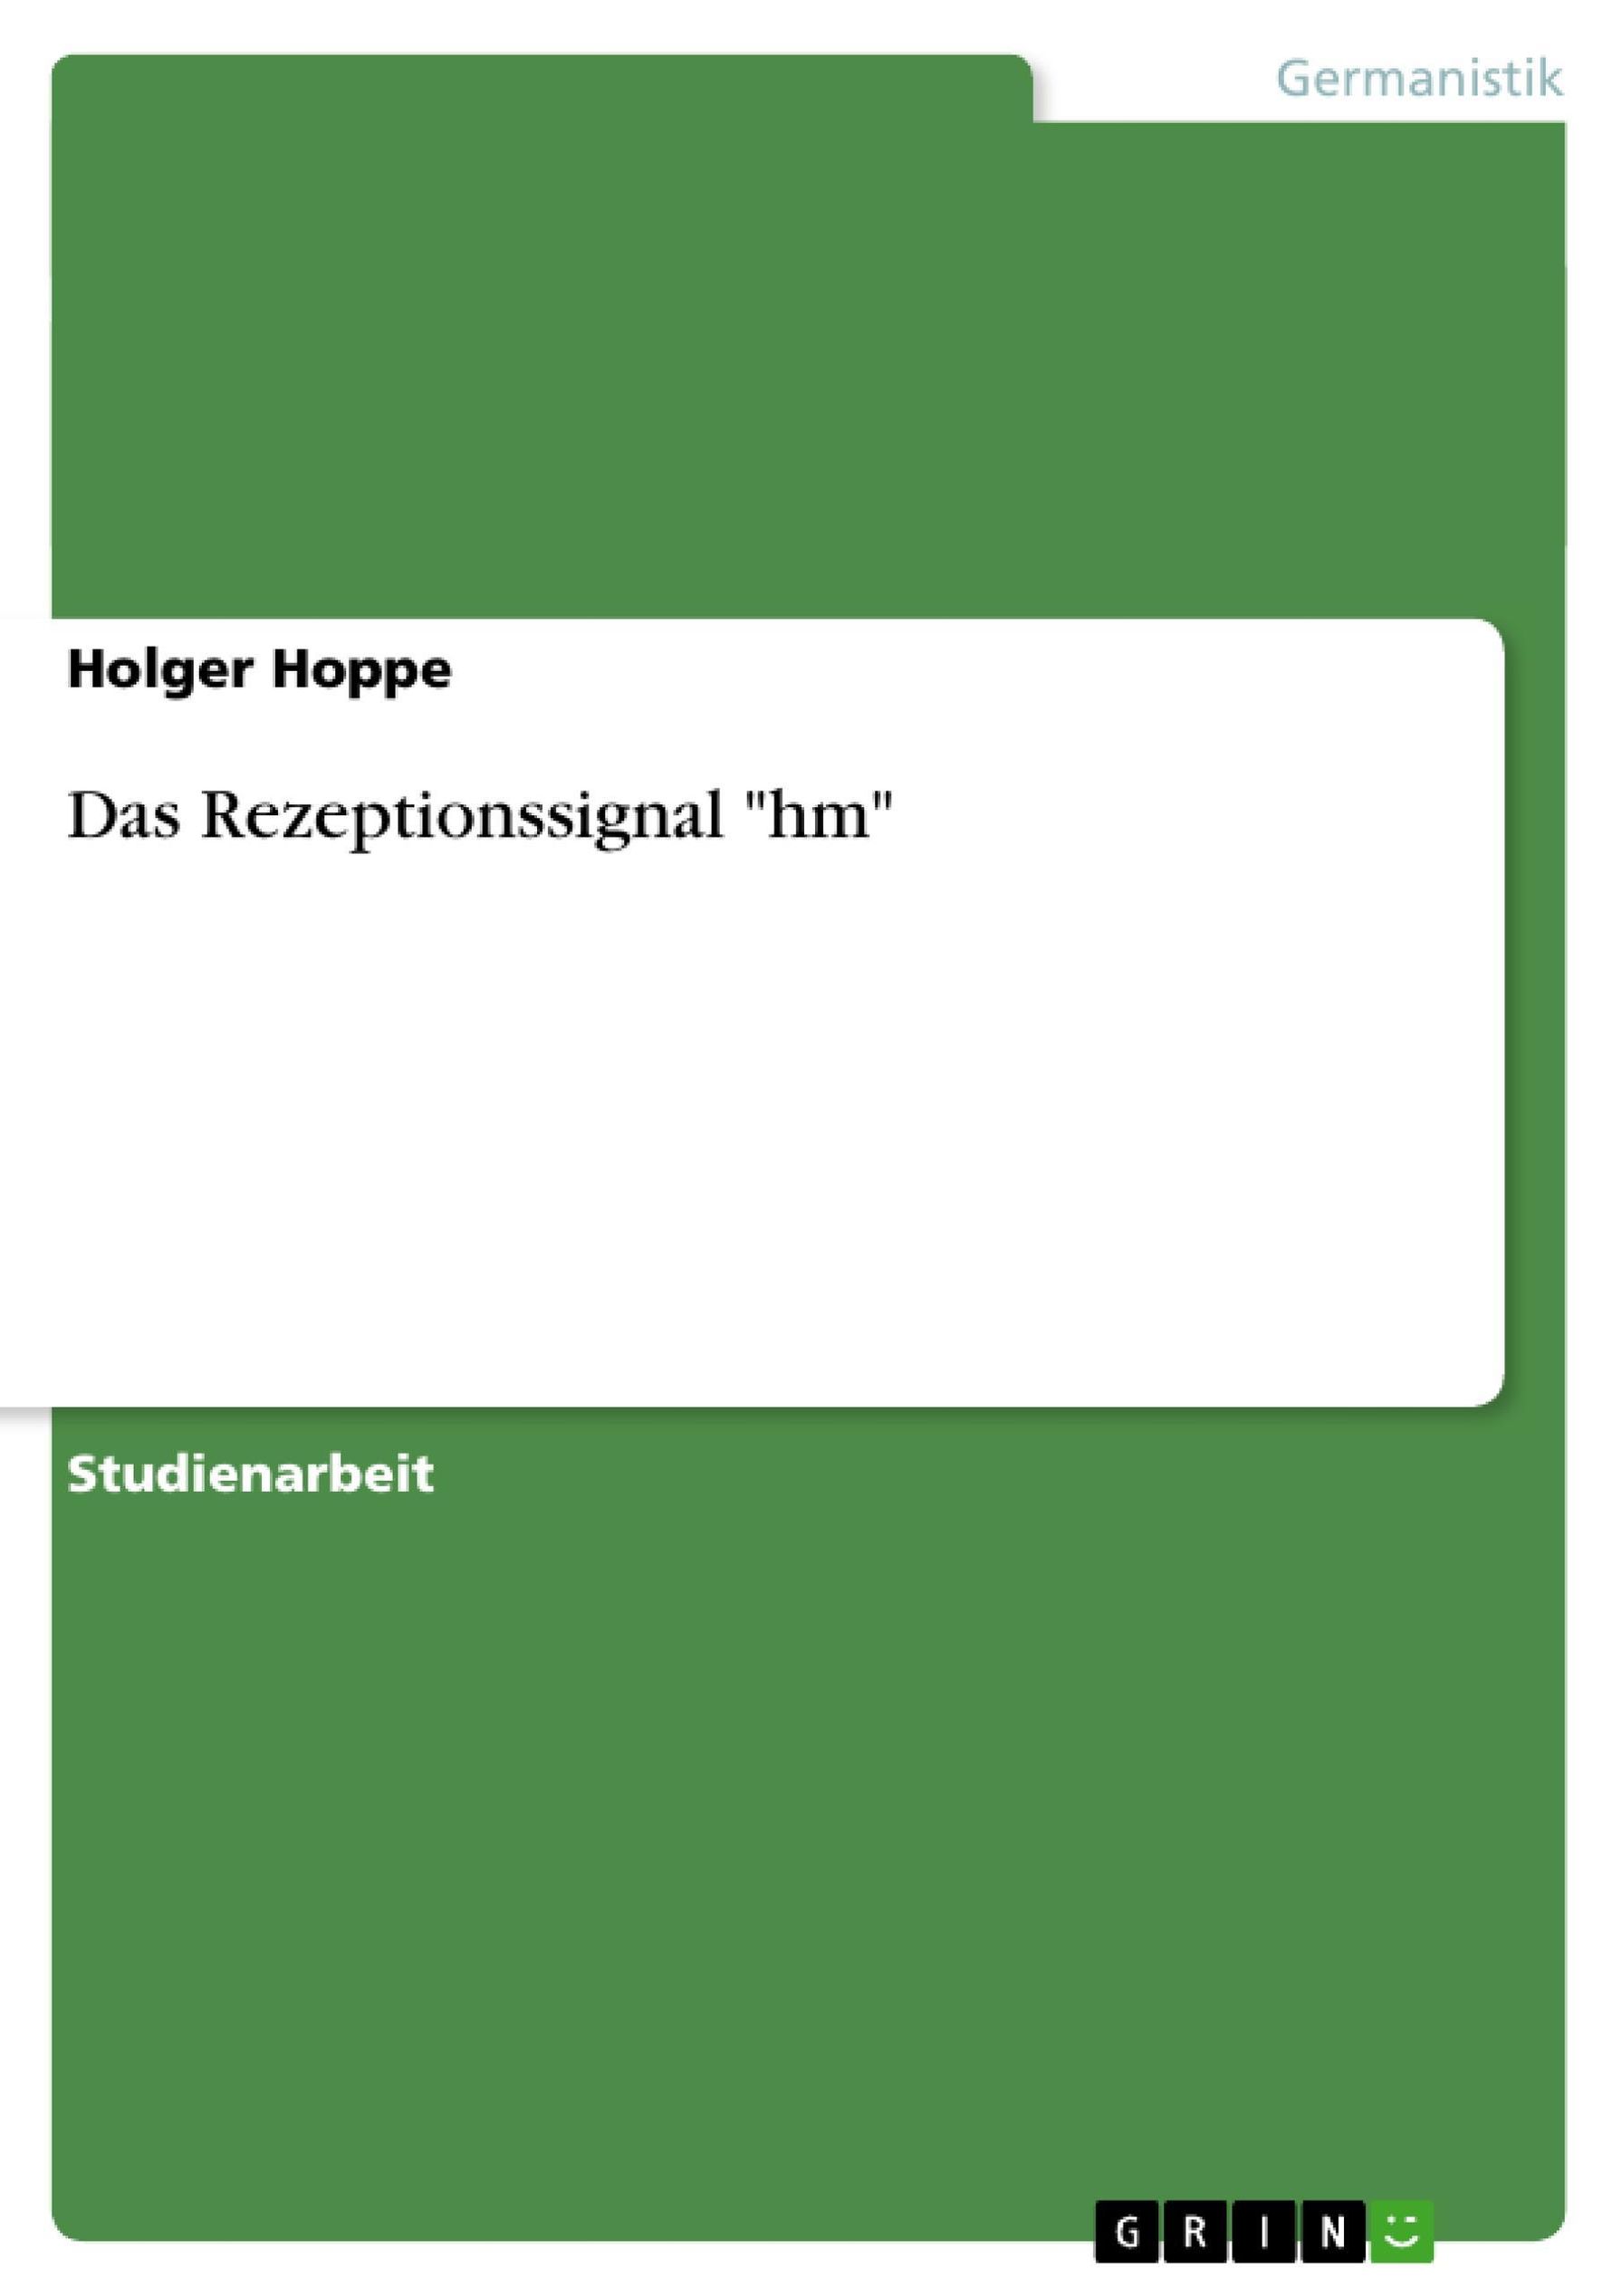 Das Rezeptionssignal hm Buch von Holger Hoppe versandkostenfrei bestellen